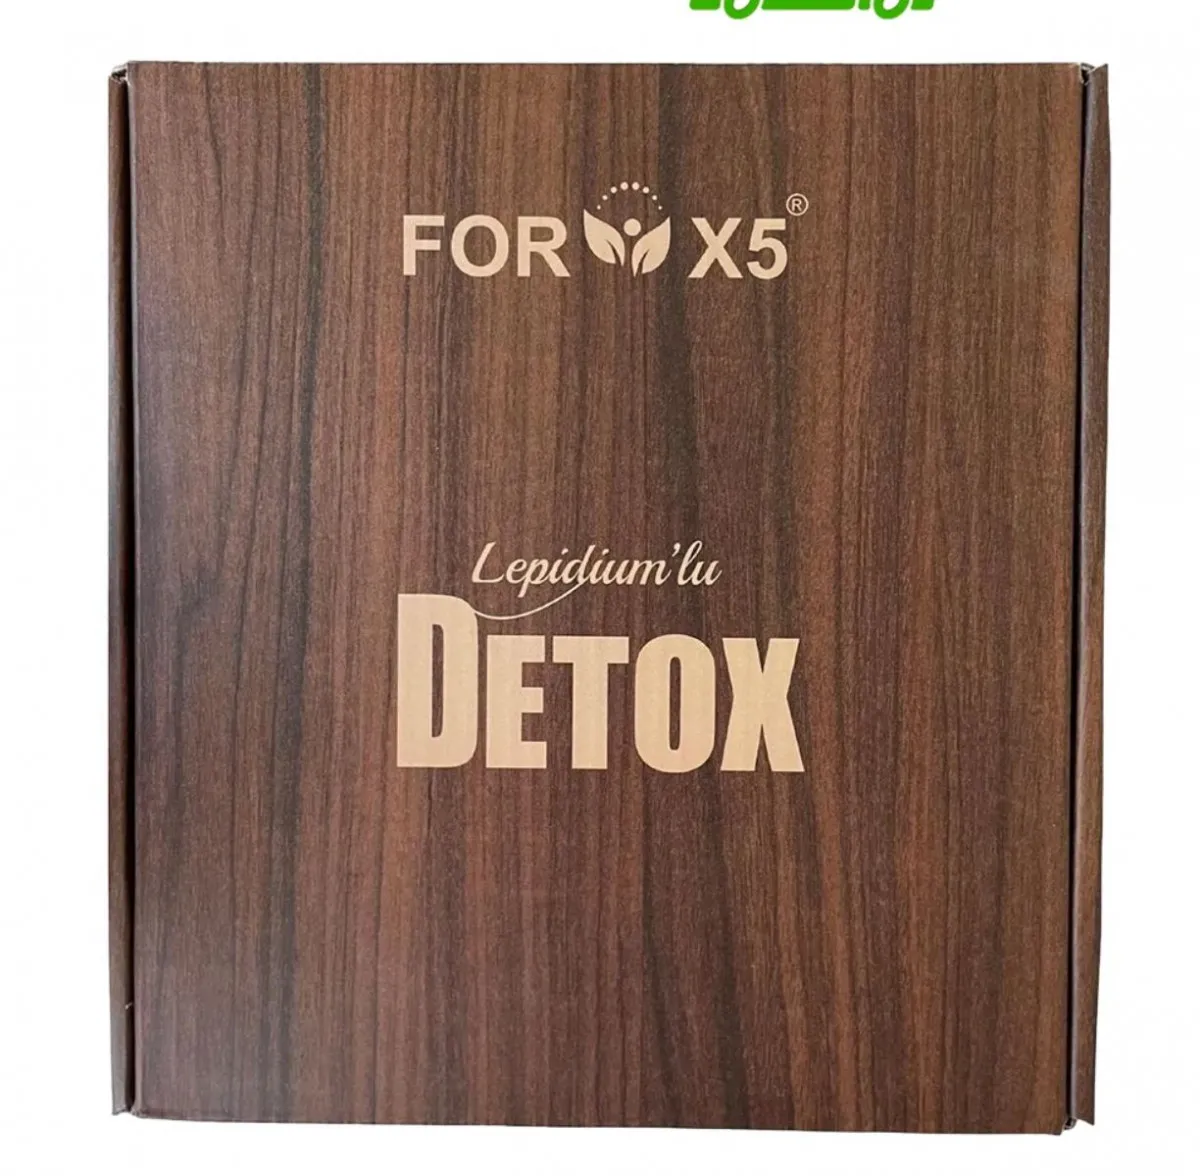 Detox for X5 vazn yo'qotish va detoksifikatsiya choyi#1